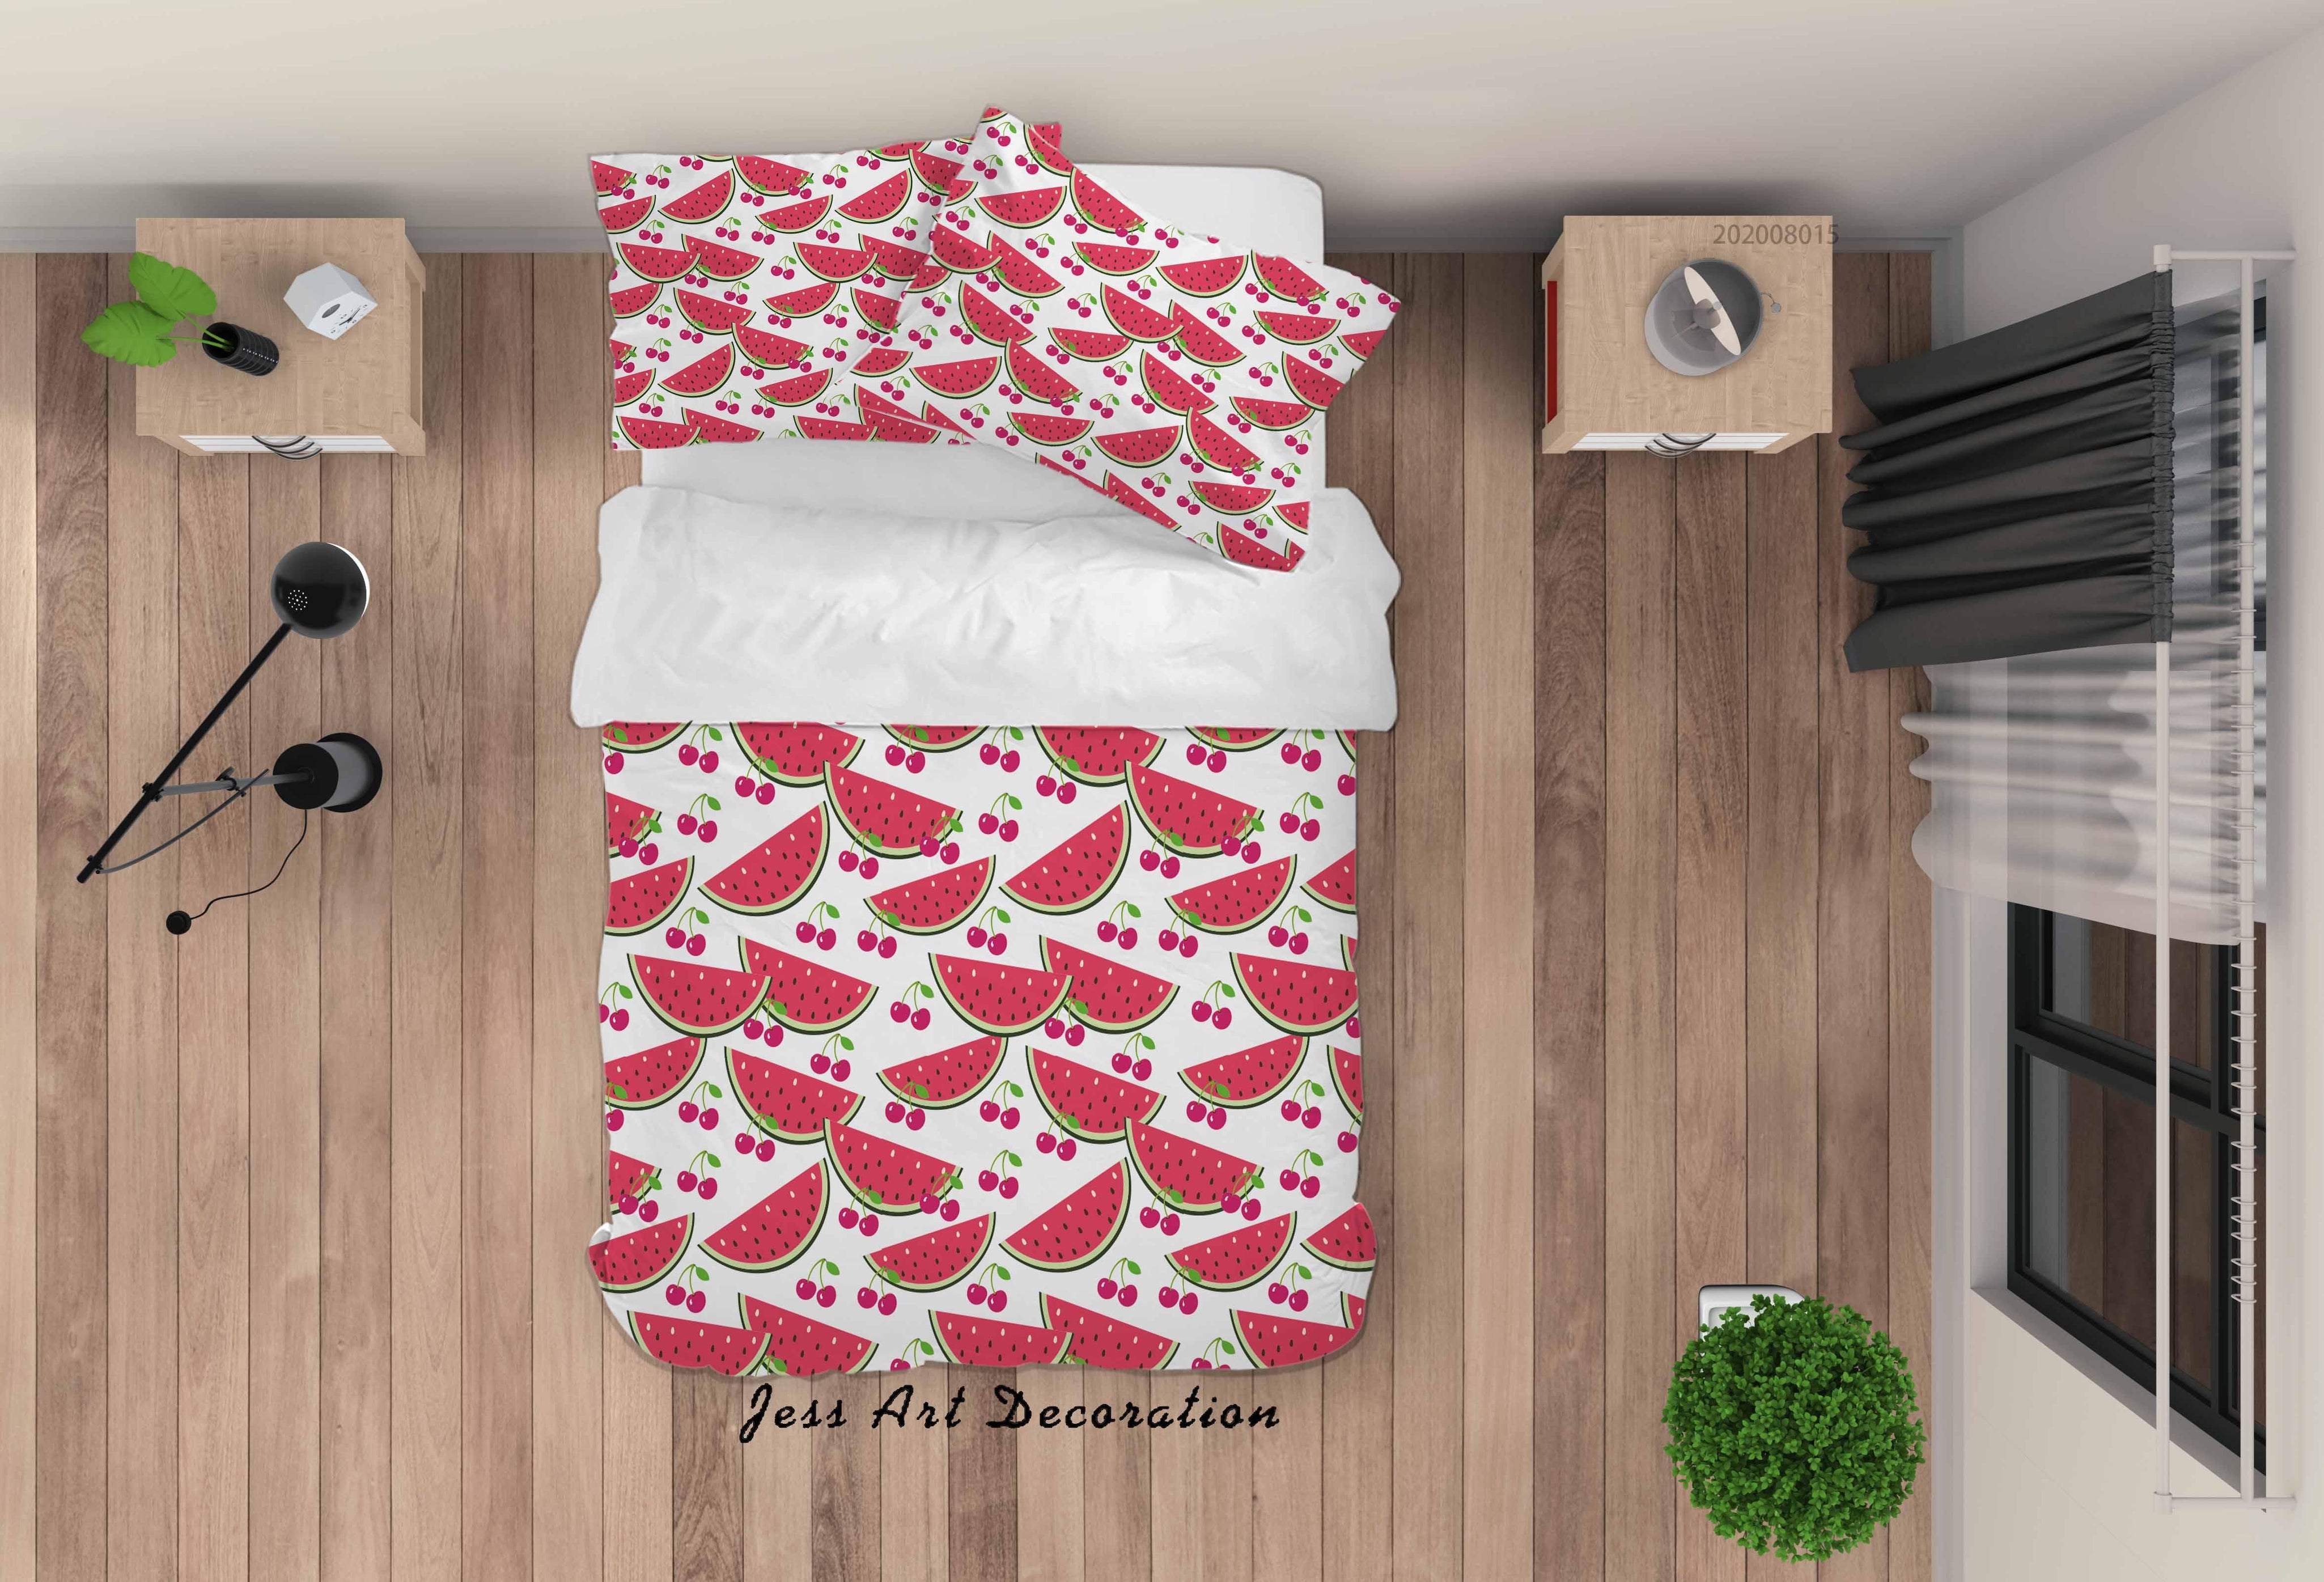 3D Watermelon Fruity Quilt Cover Set Bedding Set Duvet Cover Pillowcases LXL- Jess Art Decoration